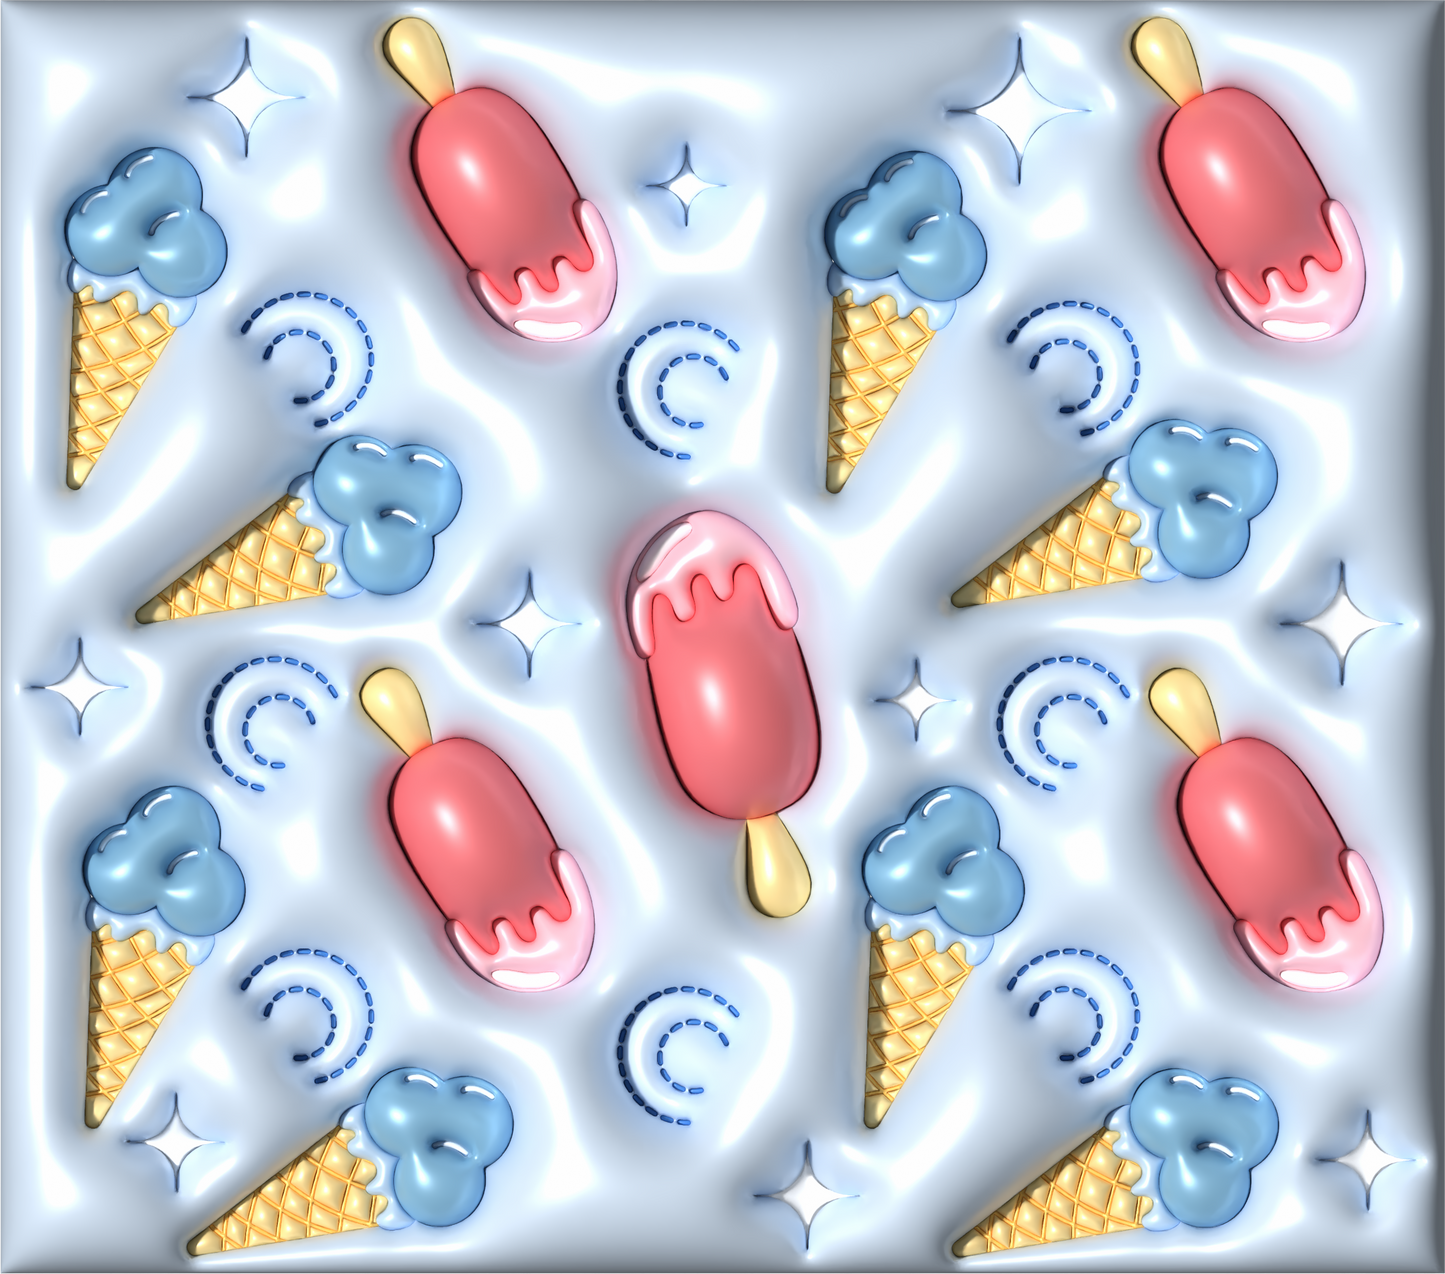 PUFF PINK/BLUE ICE CREAM CONES